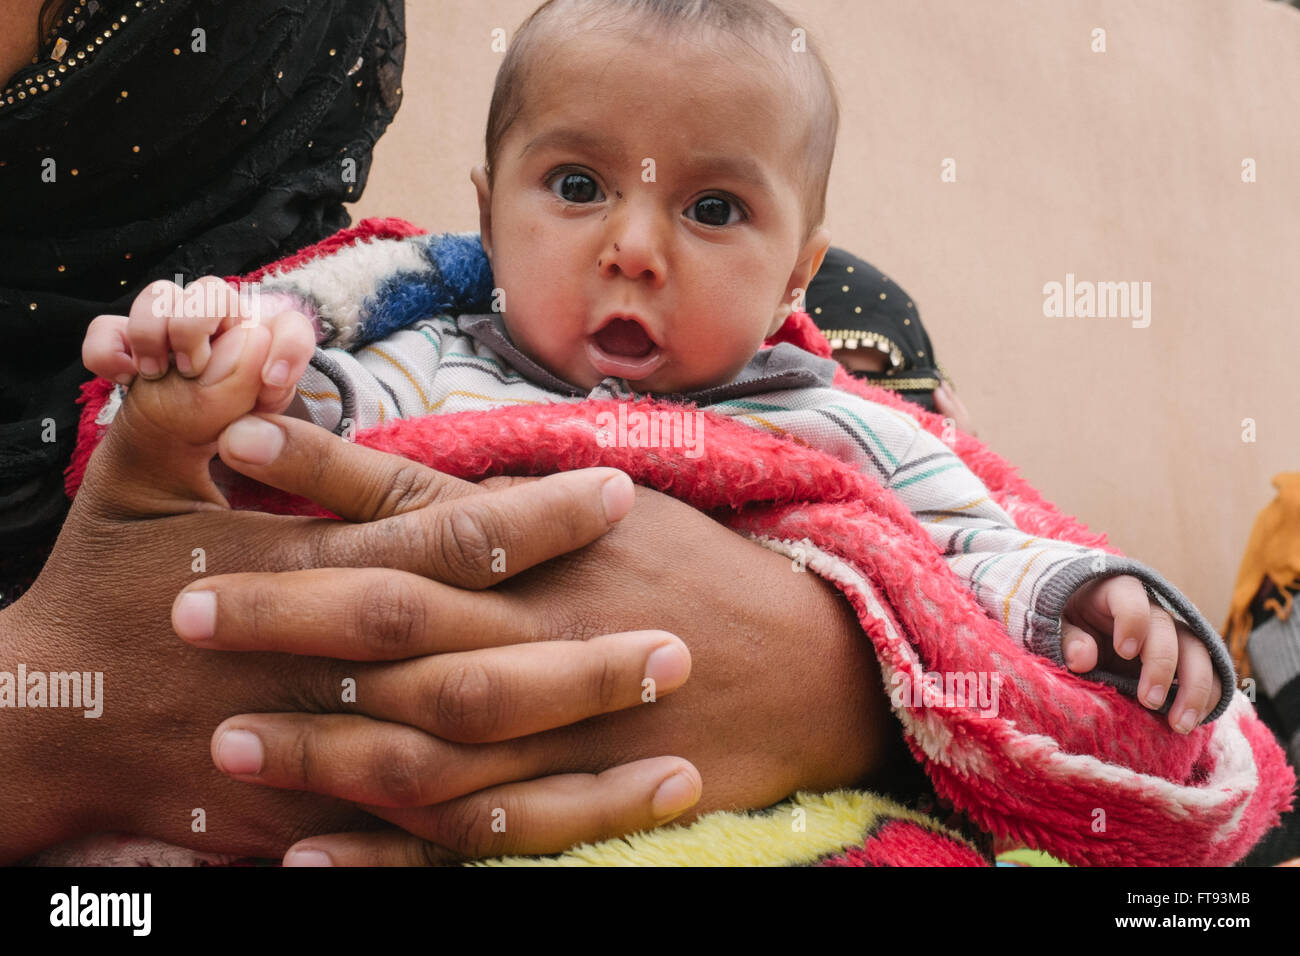 Camp de réfugiés dans le Kurdistan irakien - 15/03/2016 - Irak / Kurdistan iraquien - Des centaines de mendiants les réfugiés, surtout les enfants, sont Banque D'Images